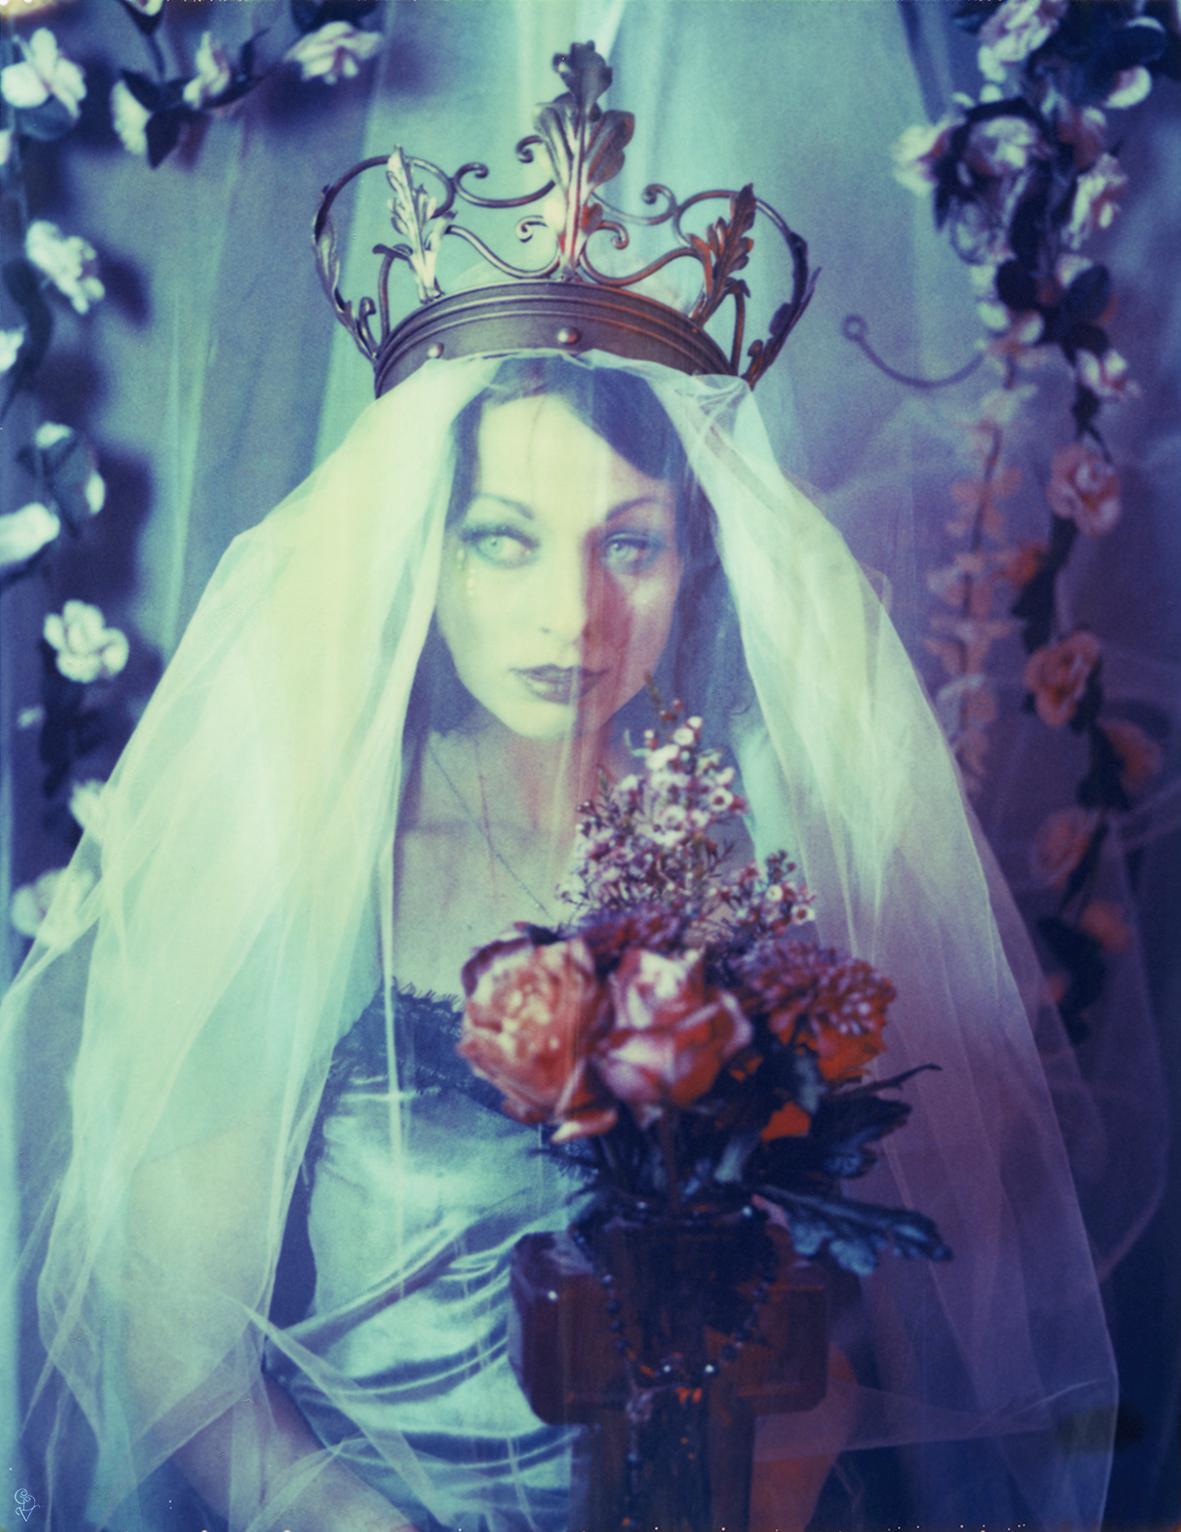 Carmen de Vos Portrait Photograph – The Chaste Madonna [Vom der Serie Fox Almighty] - Polaroid, Frauen, Farbe